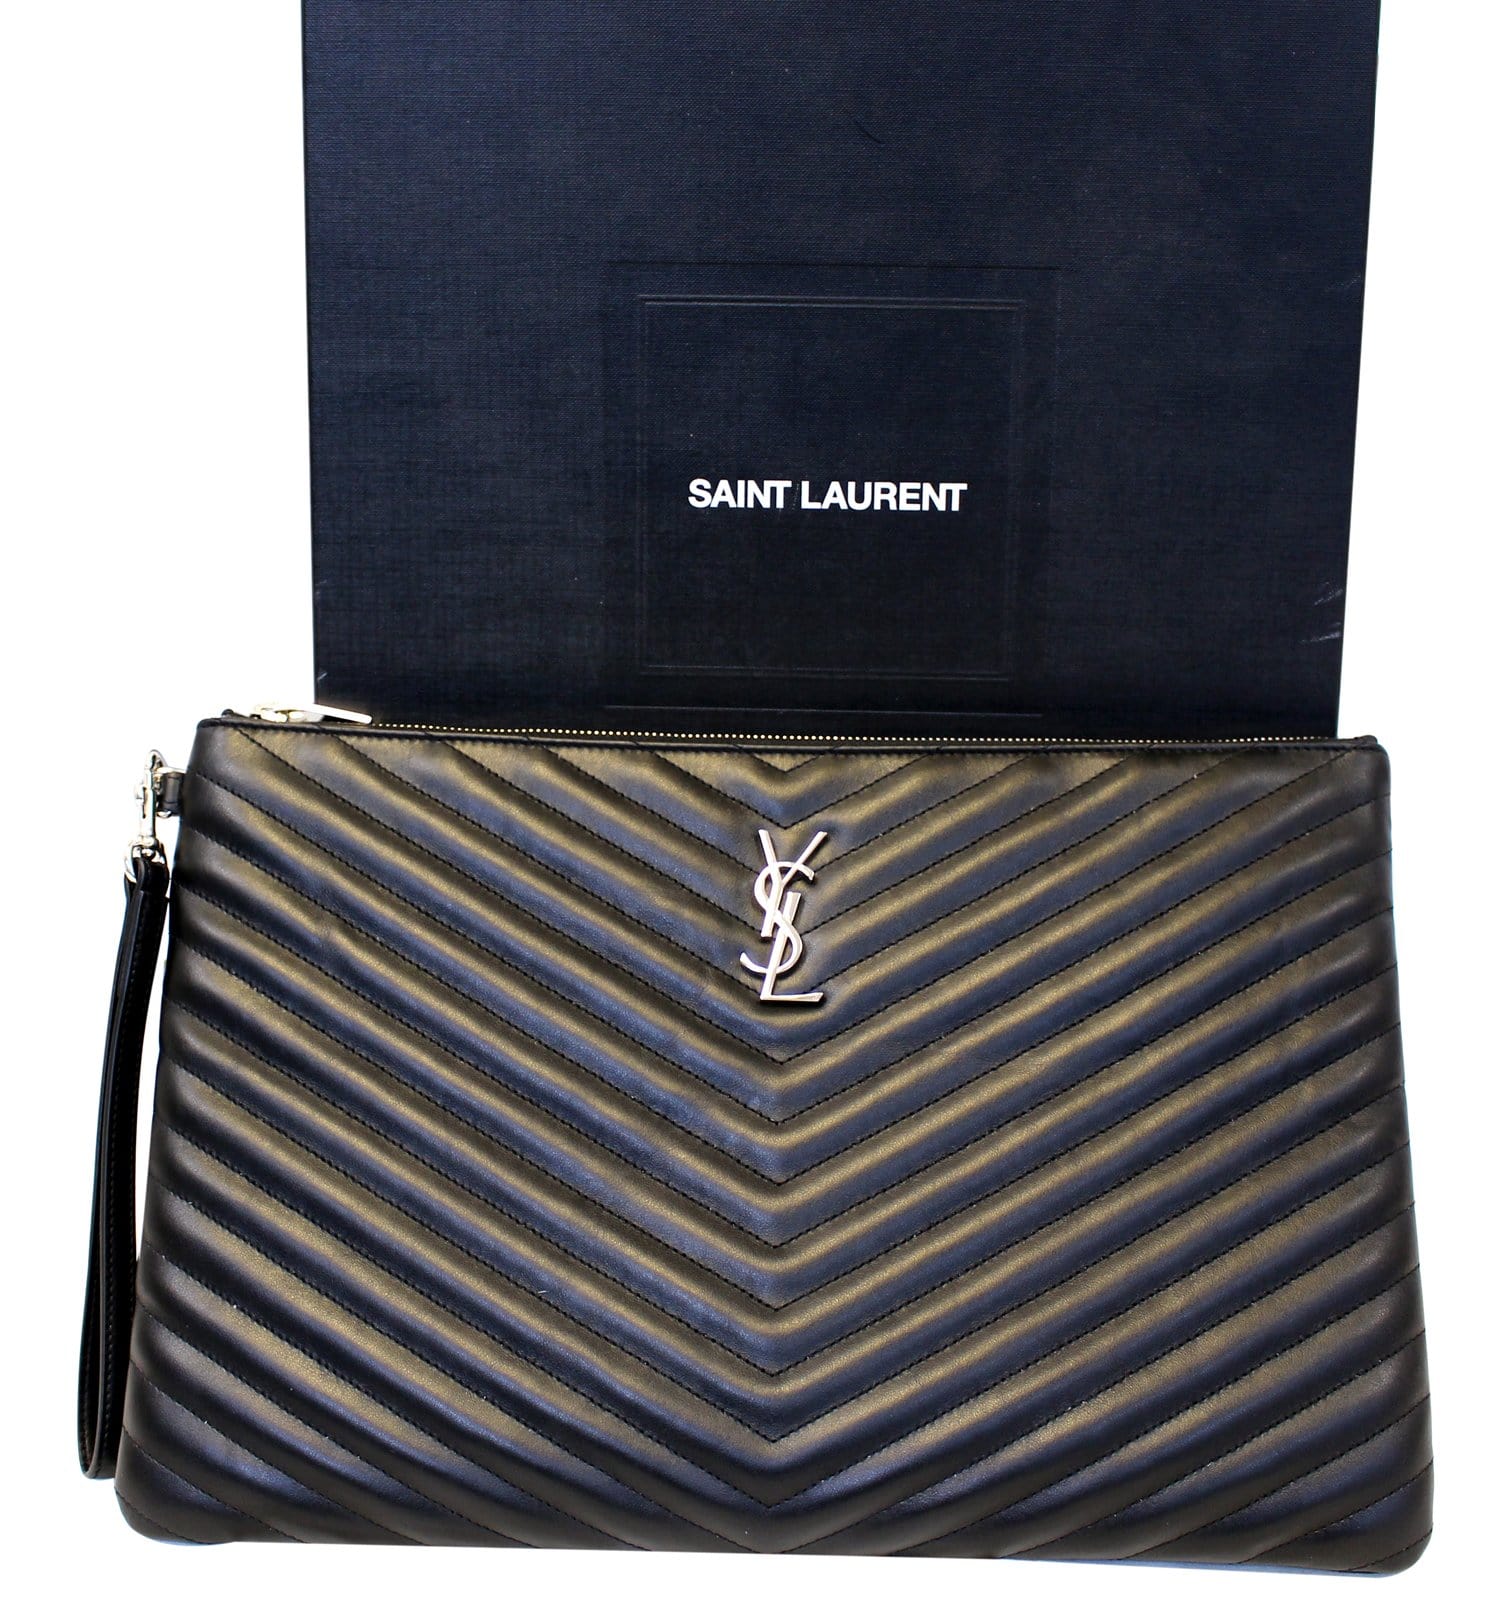 Saint Laurent Black Leather Card Holder Nd Donna Tu